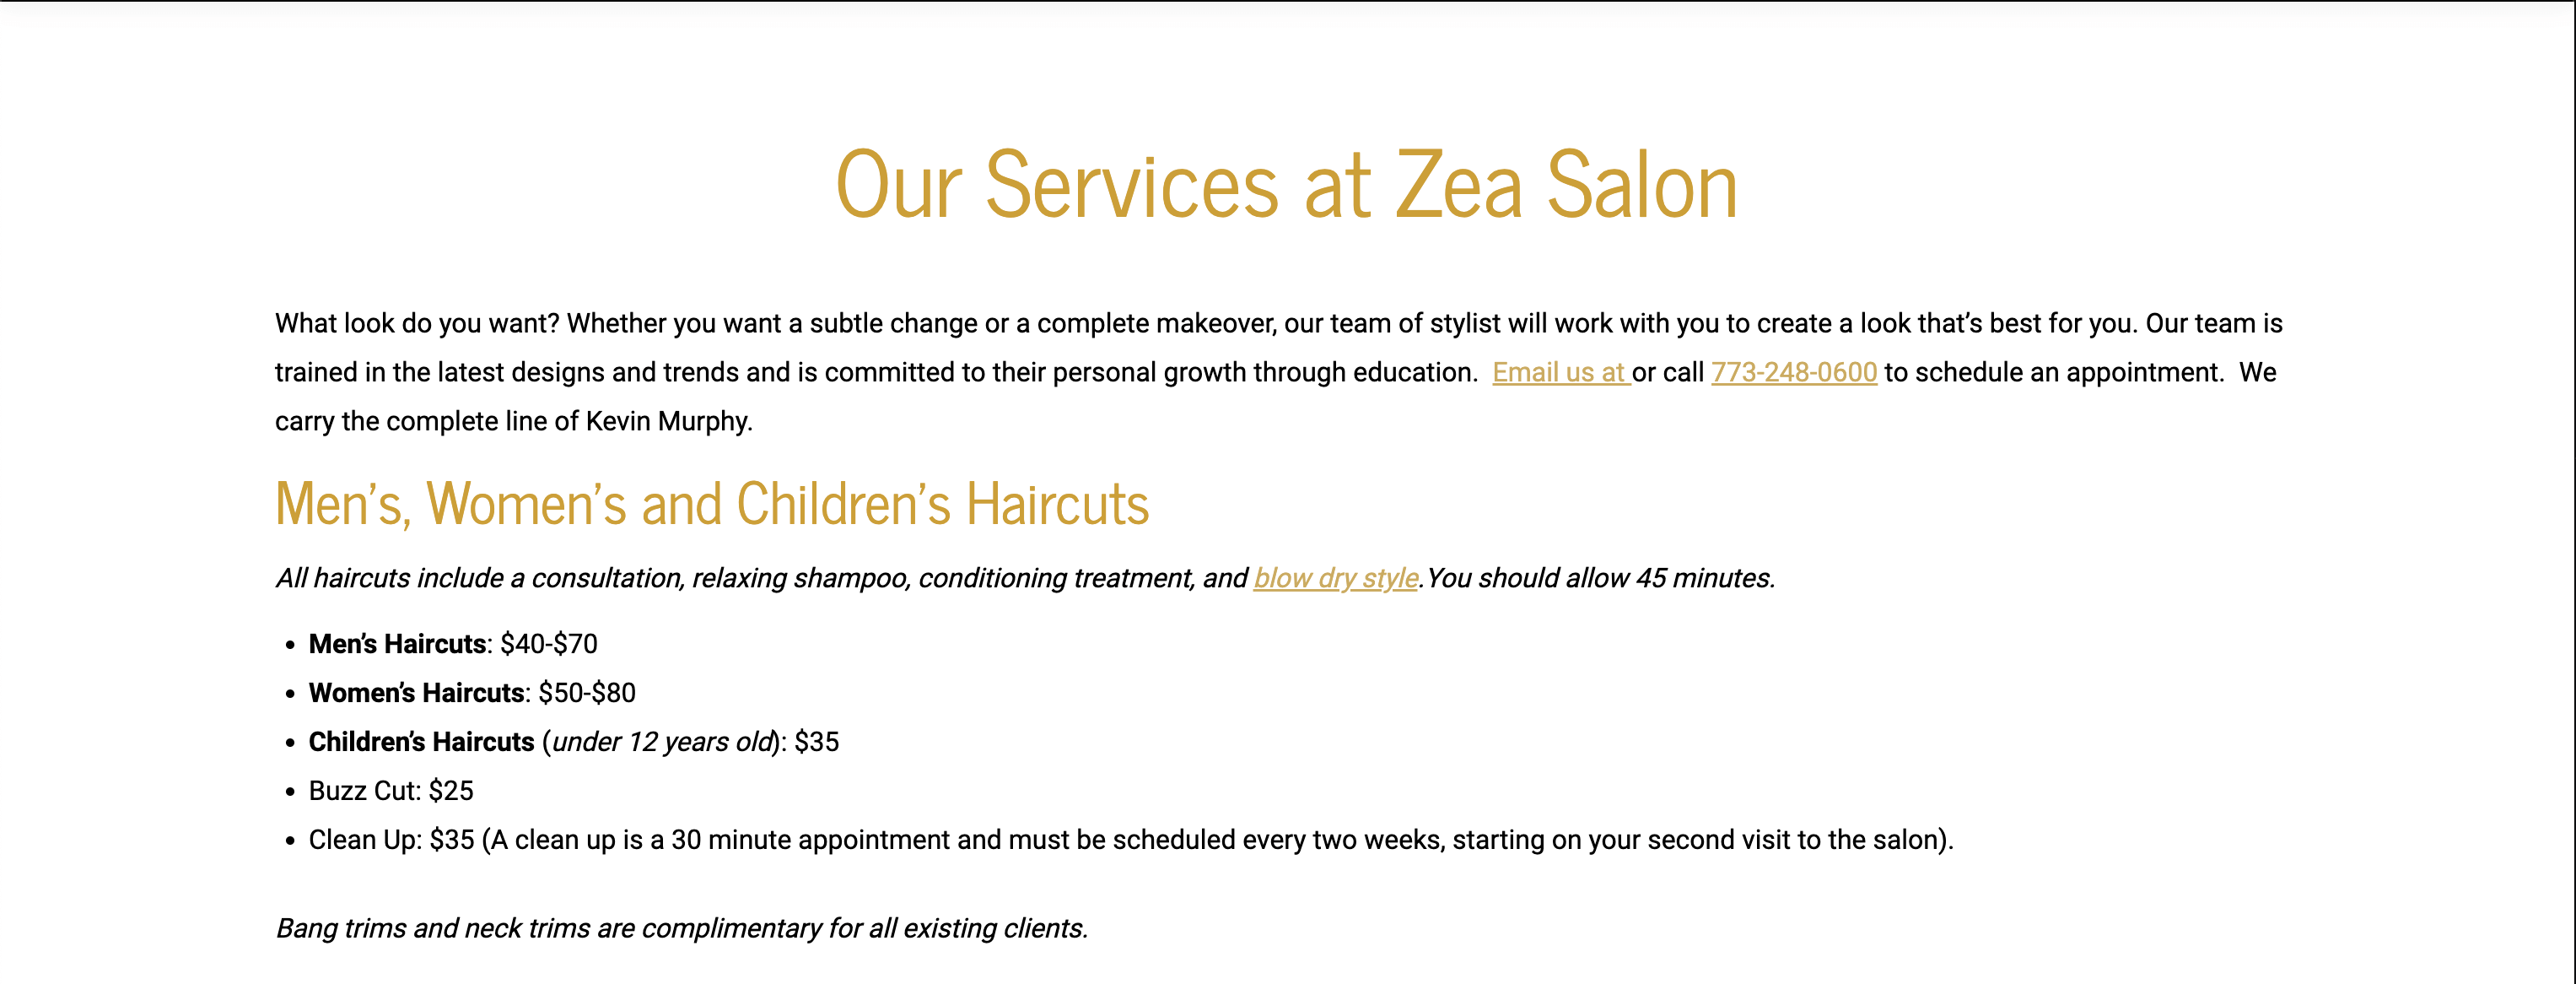 Zea Salon's services page